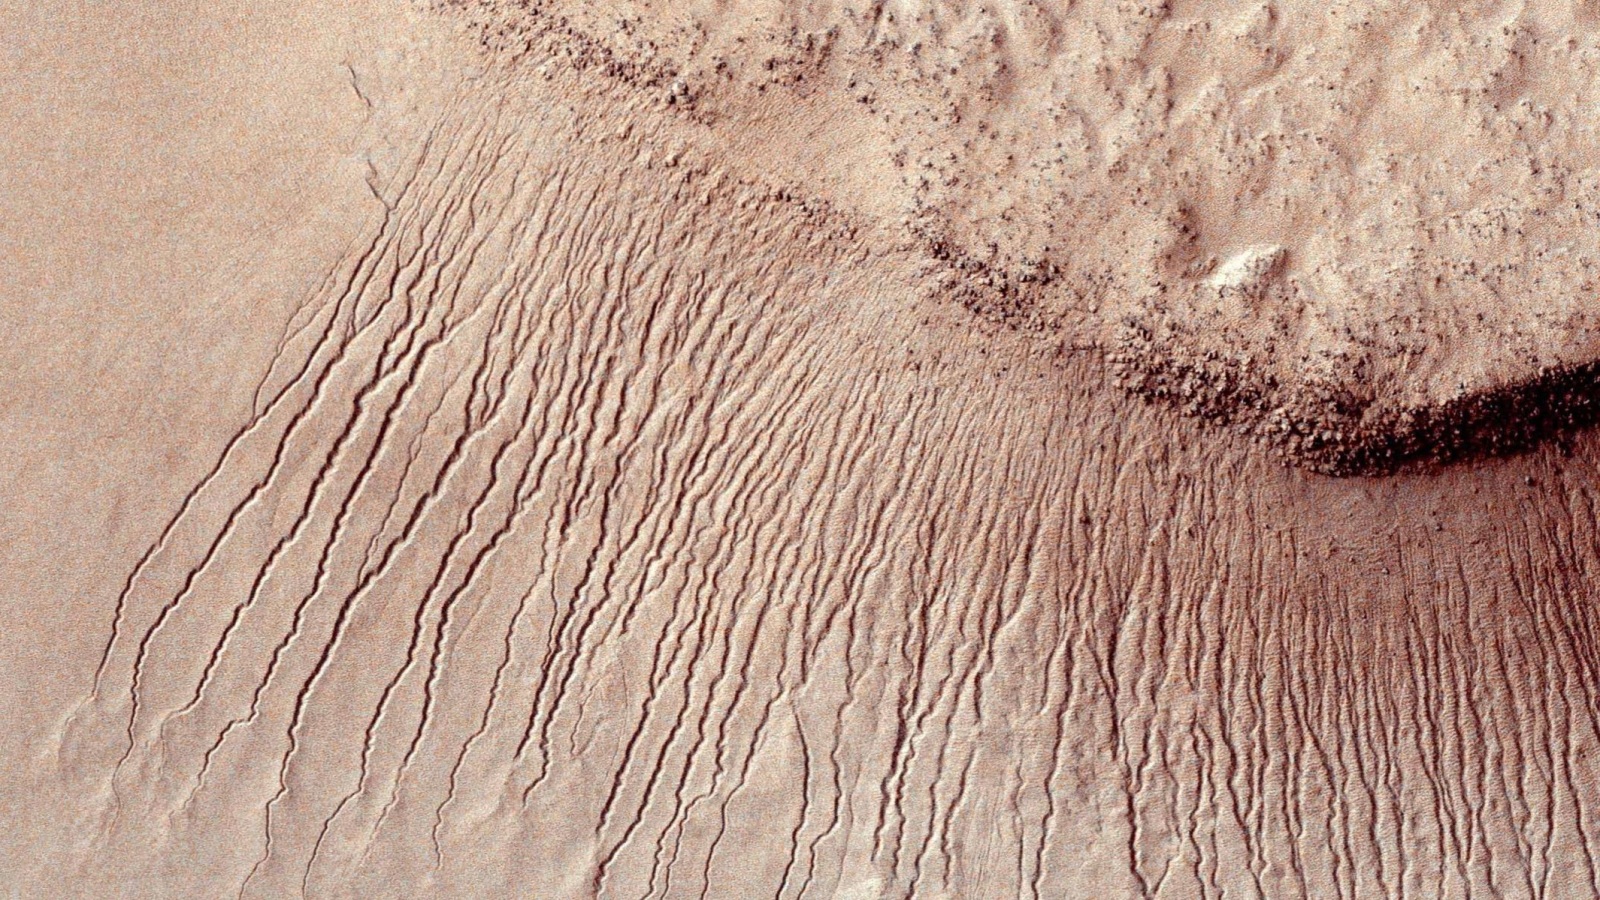 ‪قنوات مياه بعرض يتراوح بين متر وعشرة أمتار في صورة لمنطقة على سطح المريخ التقطها المسبار المداري روكونيسونس‬ 
قنوات مياه بعرض يتراوح بين متر وعشرة أمتار في صورة لمنطقة على سطح المريخ التقطها المسبار المداري روكونيسونس (رويترز)
